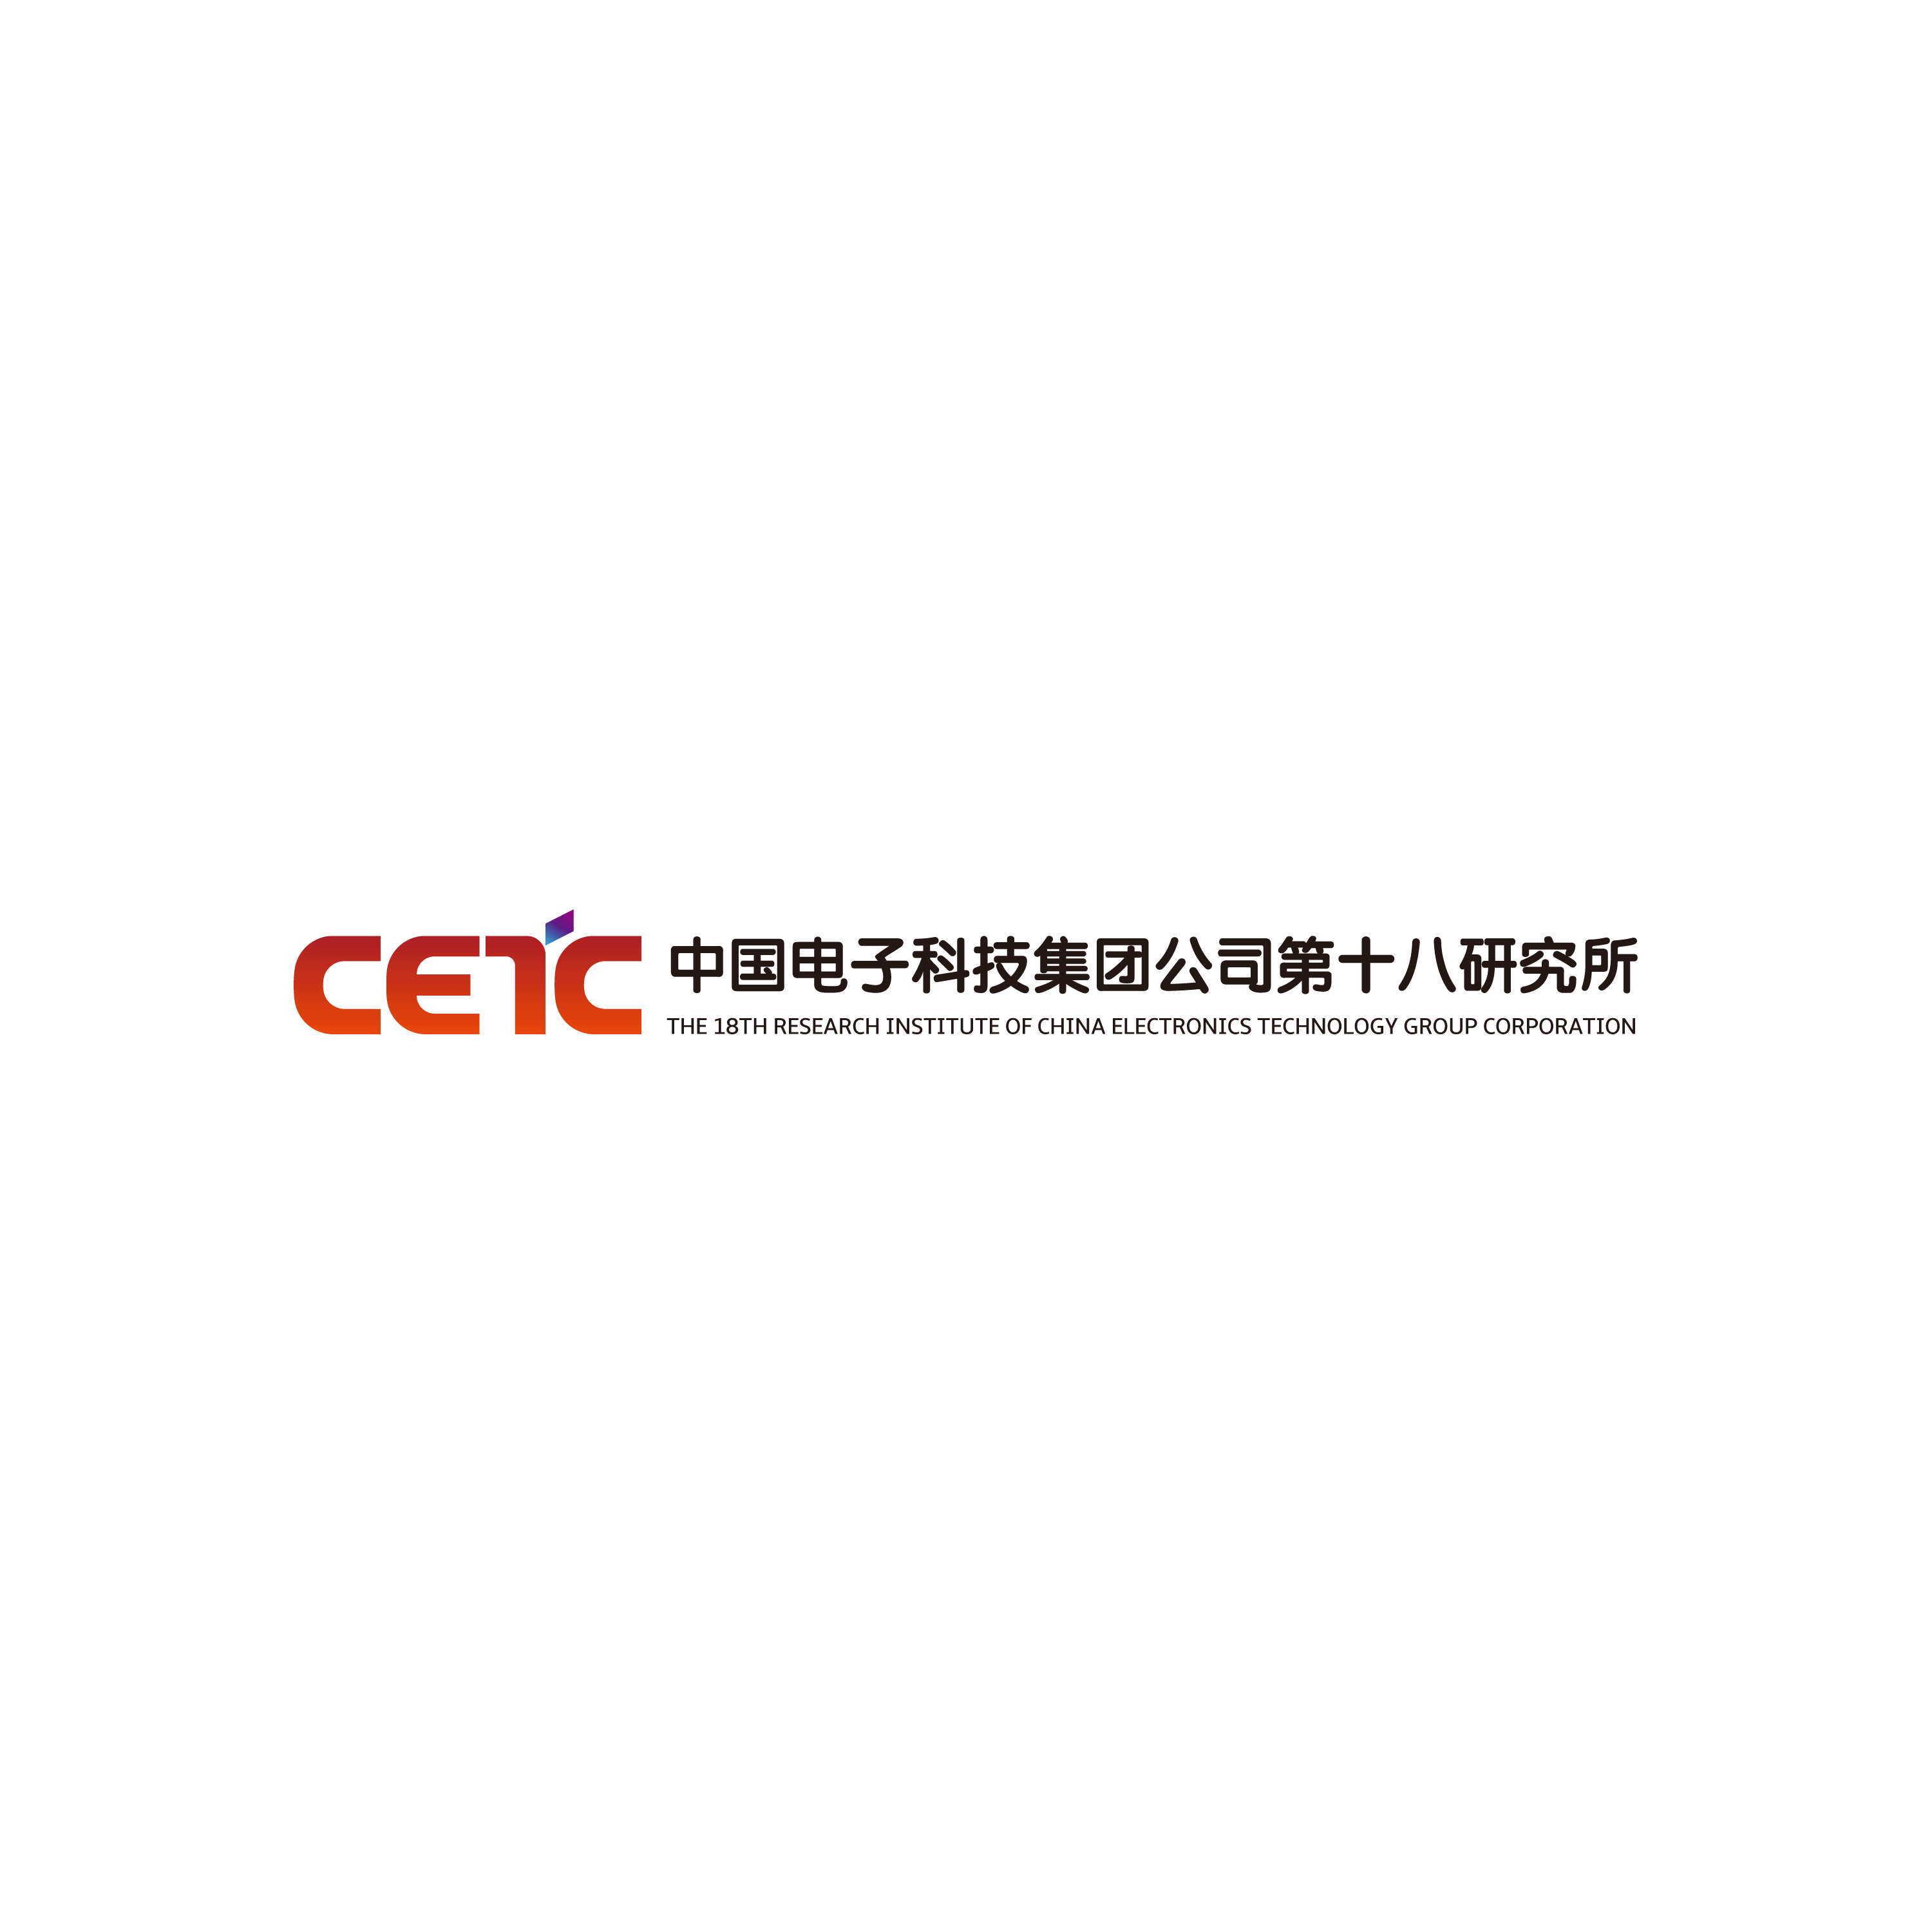 电子科技集团公司第十八研究所(天津电源研究所)座落于渤海之滨天津市